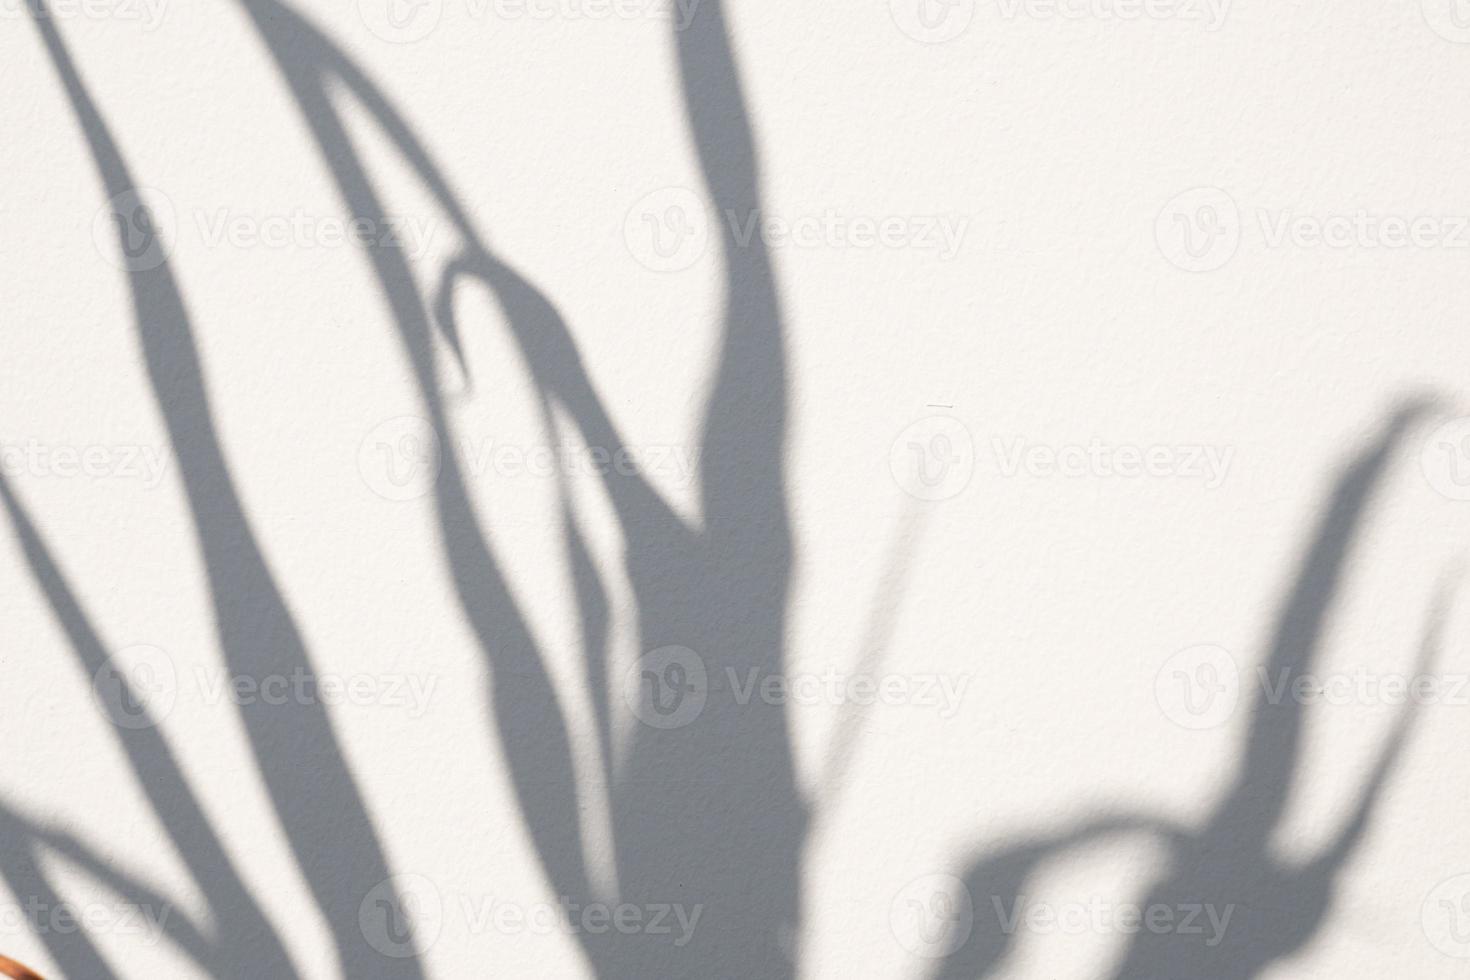 árvore natural abstrata deixa sombra no fundo da parede branca foto